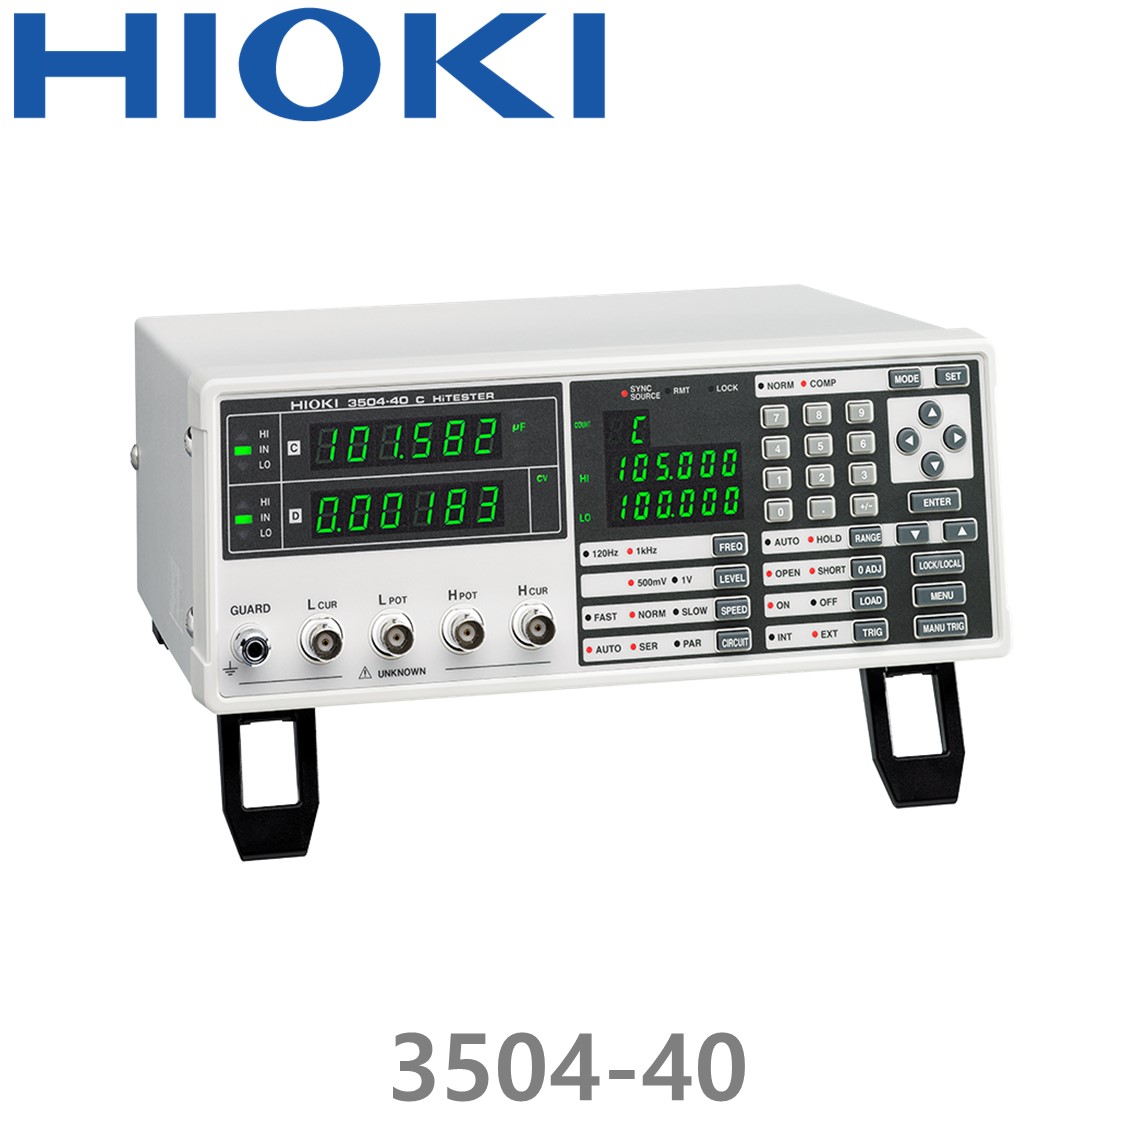 [ HIOKI ] 3504-40 C 하이테스터, Capacitance Meter, RS-232C